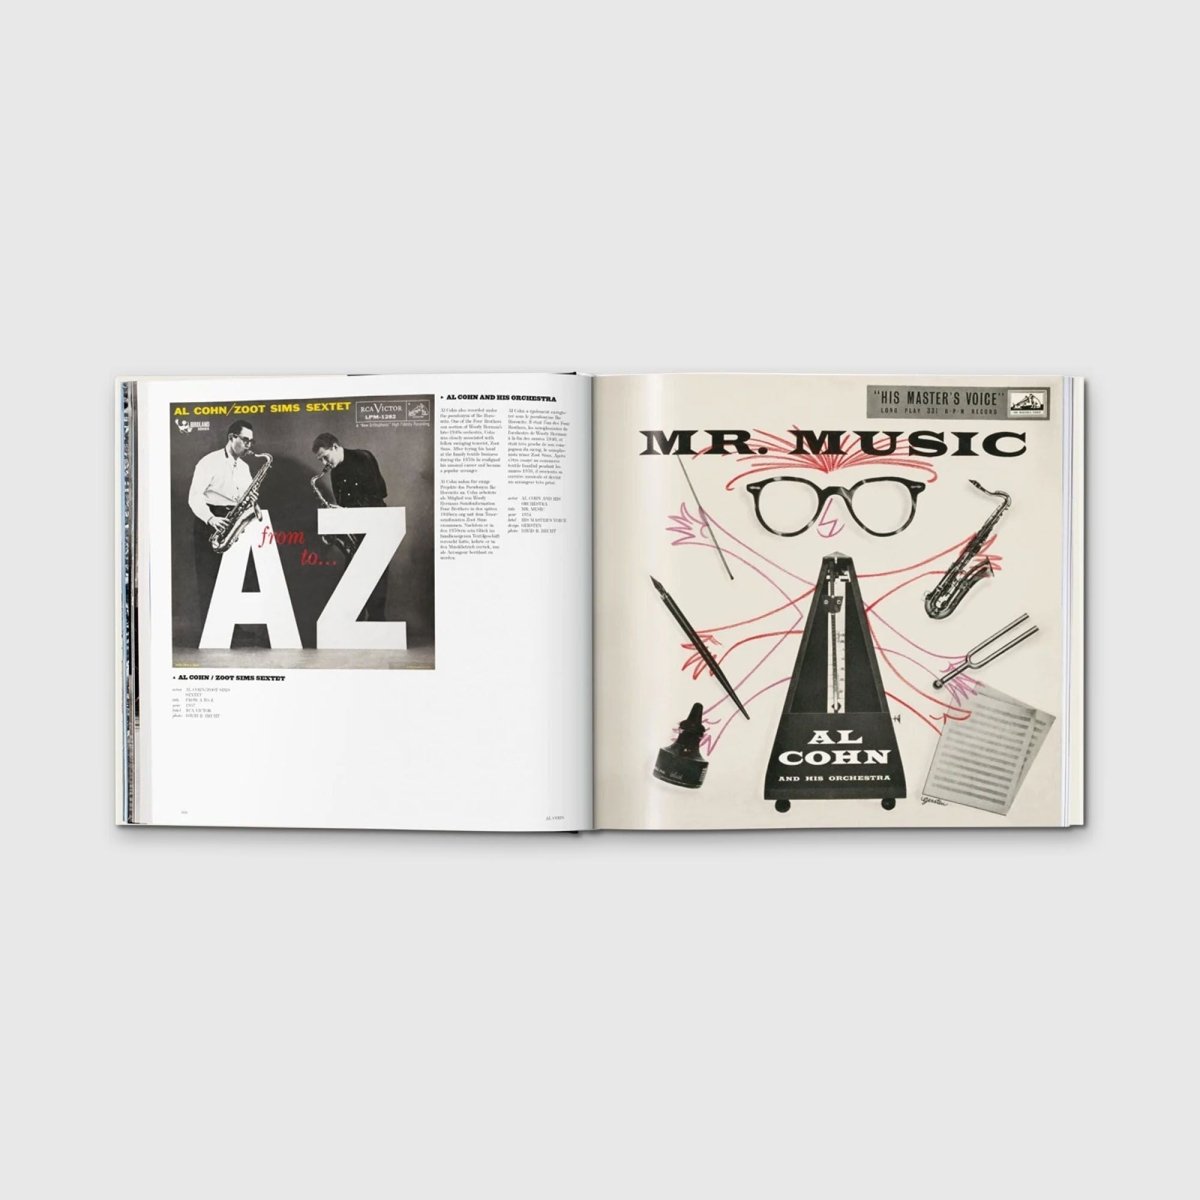 Jazz Covers - Autotype